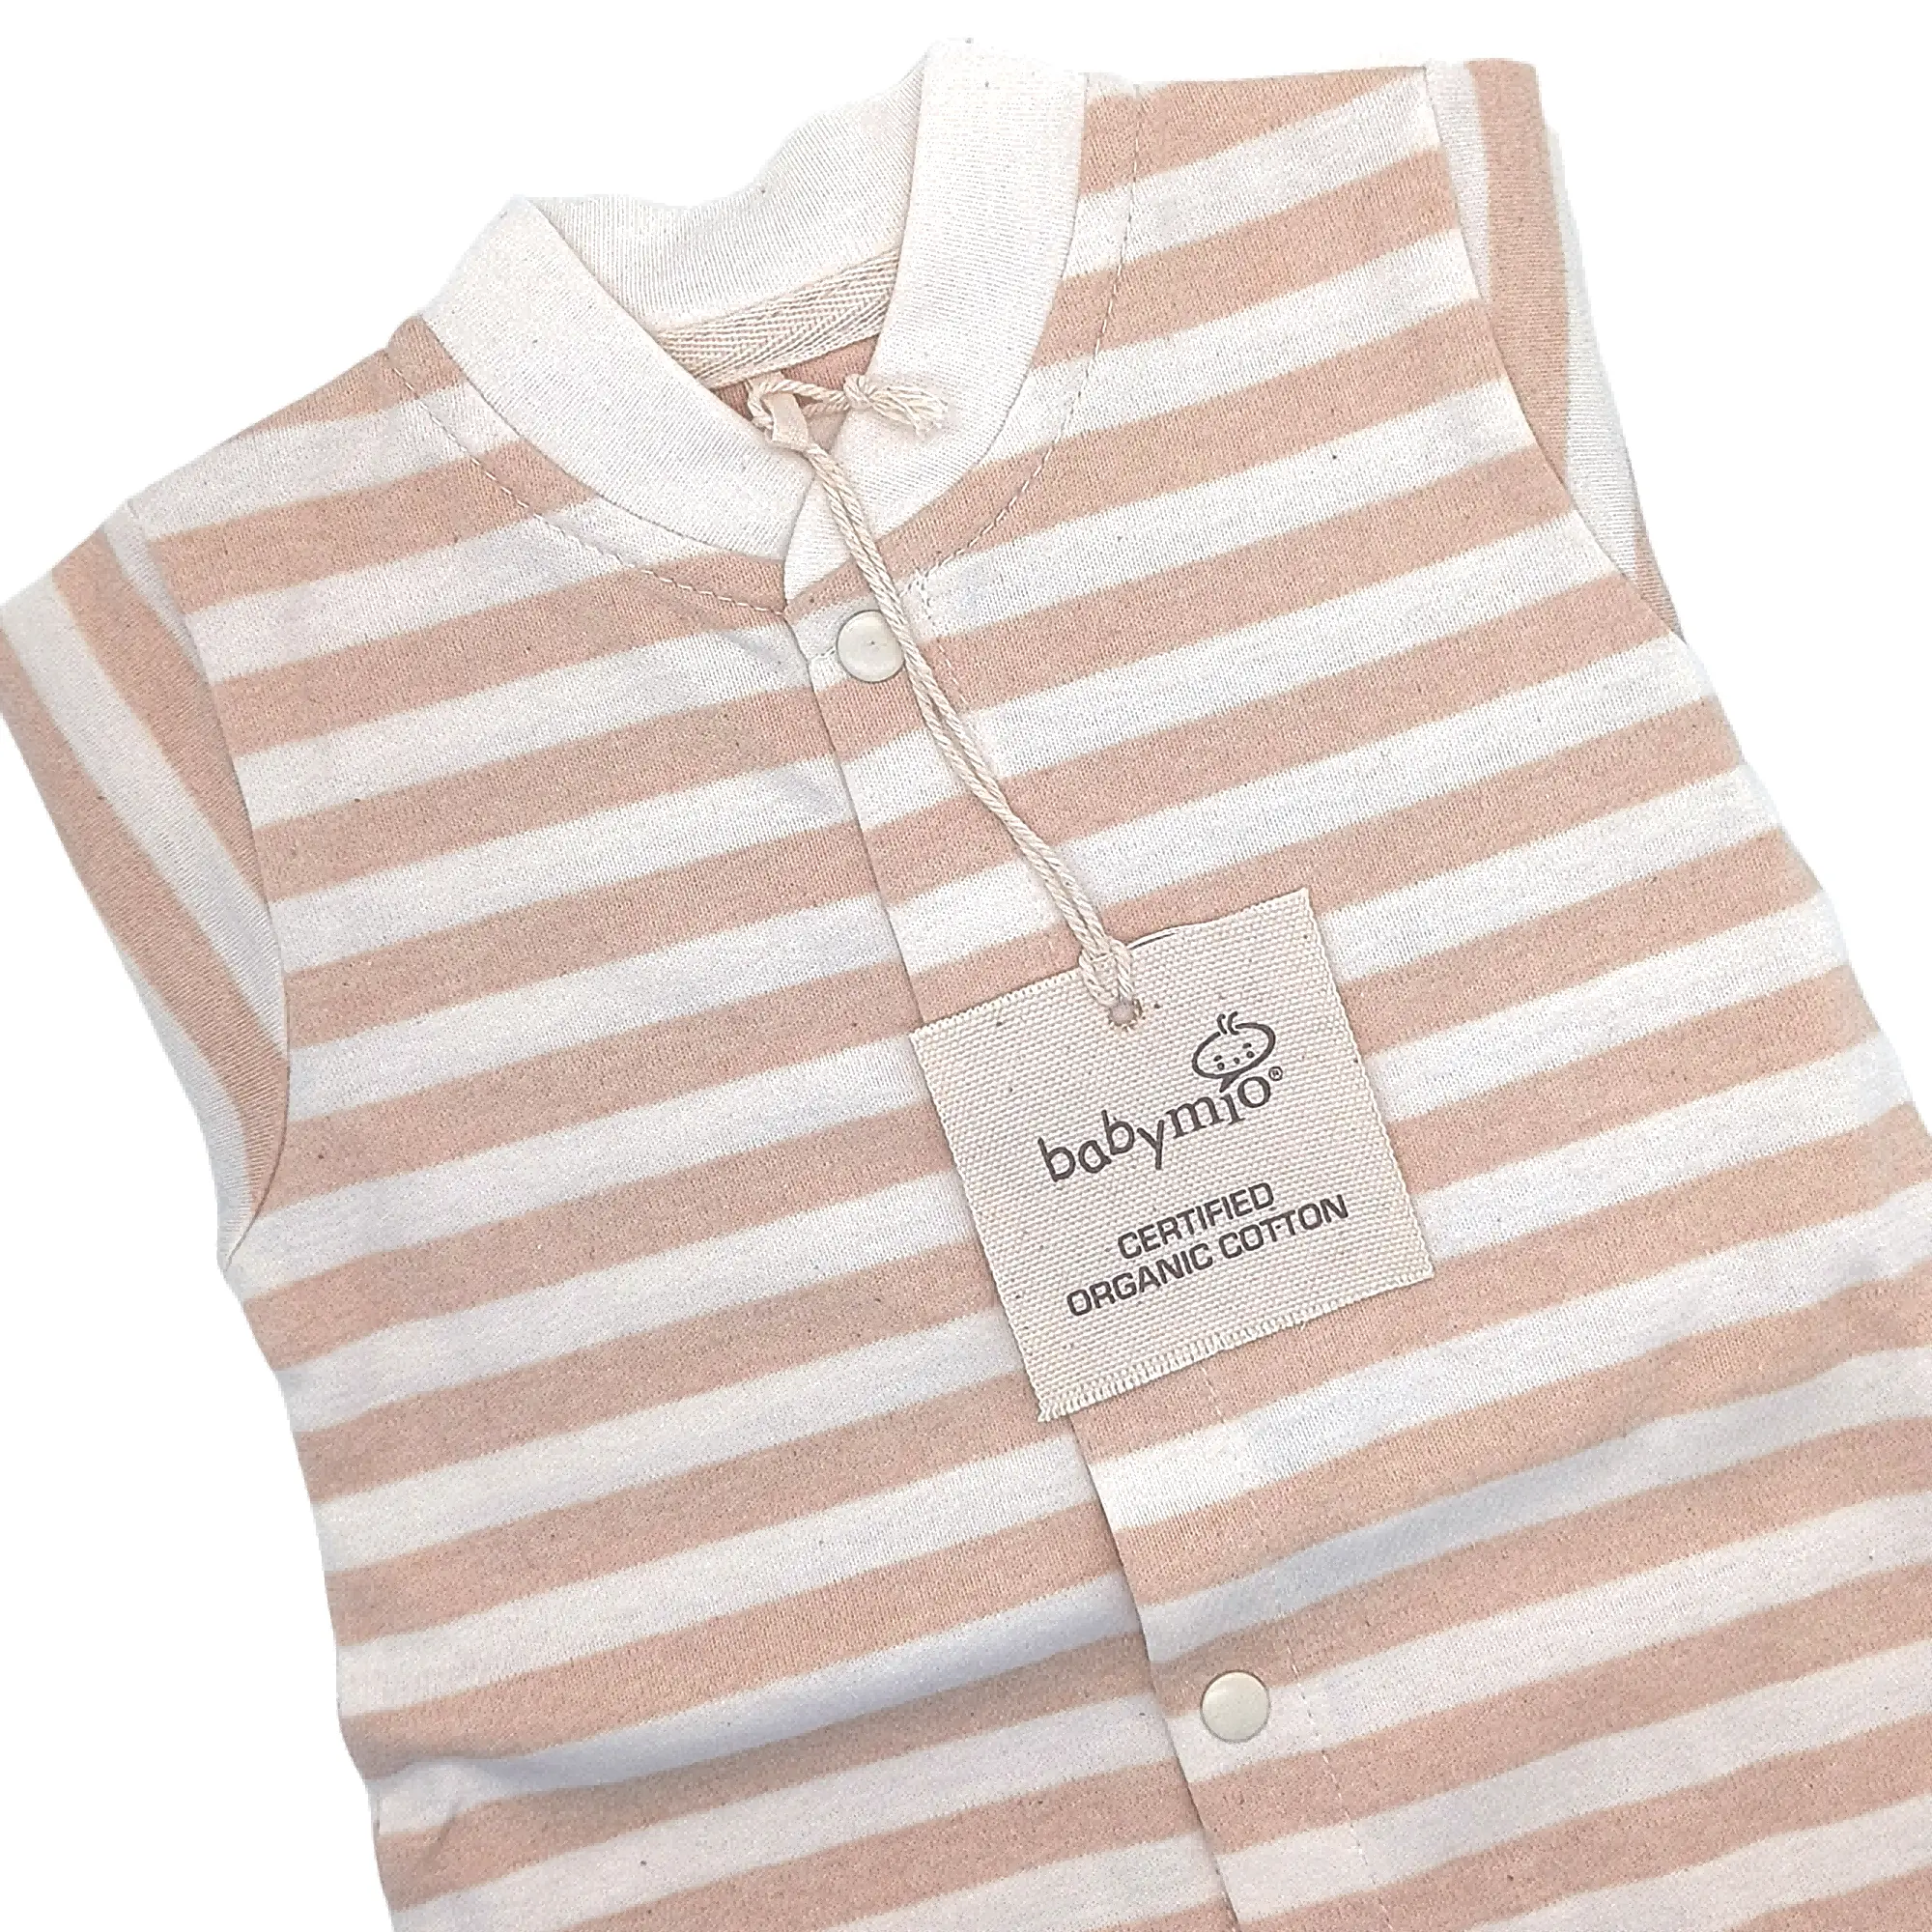 Pelele de bebé de manga larga 100% algodón mono de bebé gran oferta conjuntos de ropa de bebé para niños y niñas